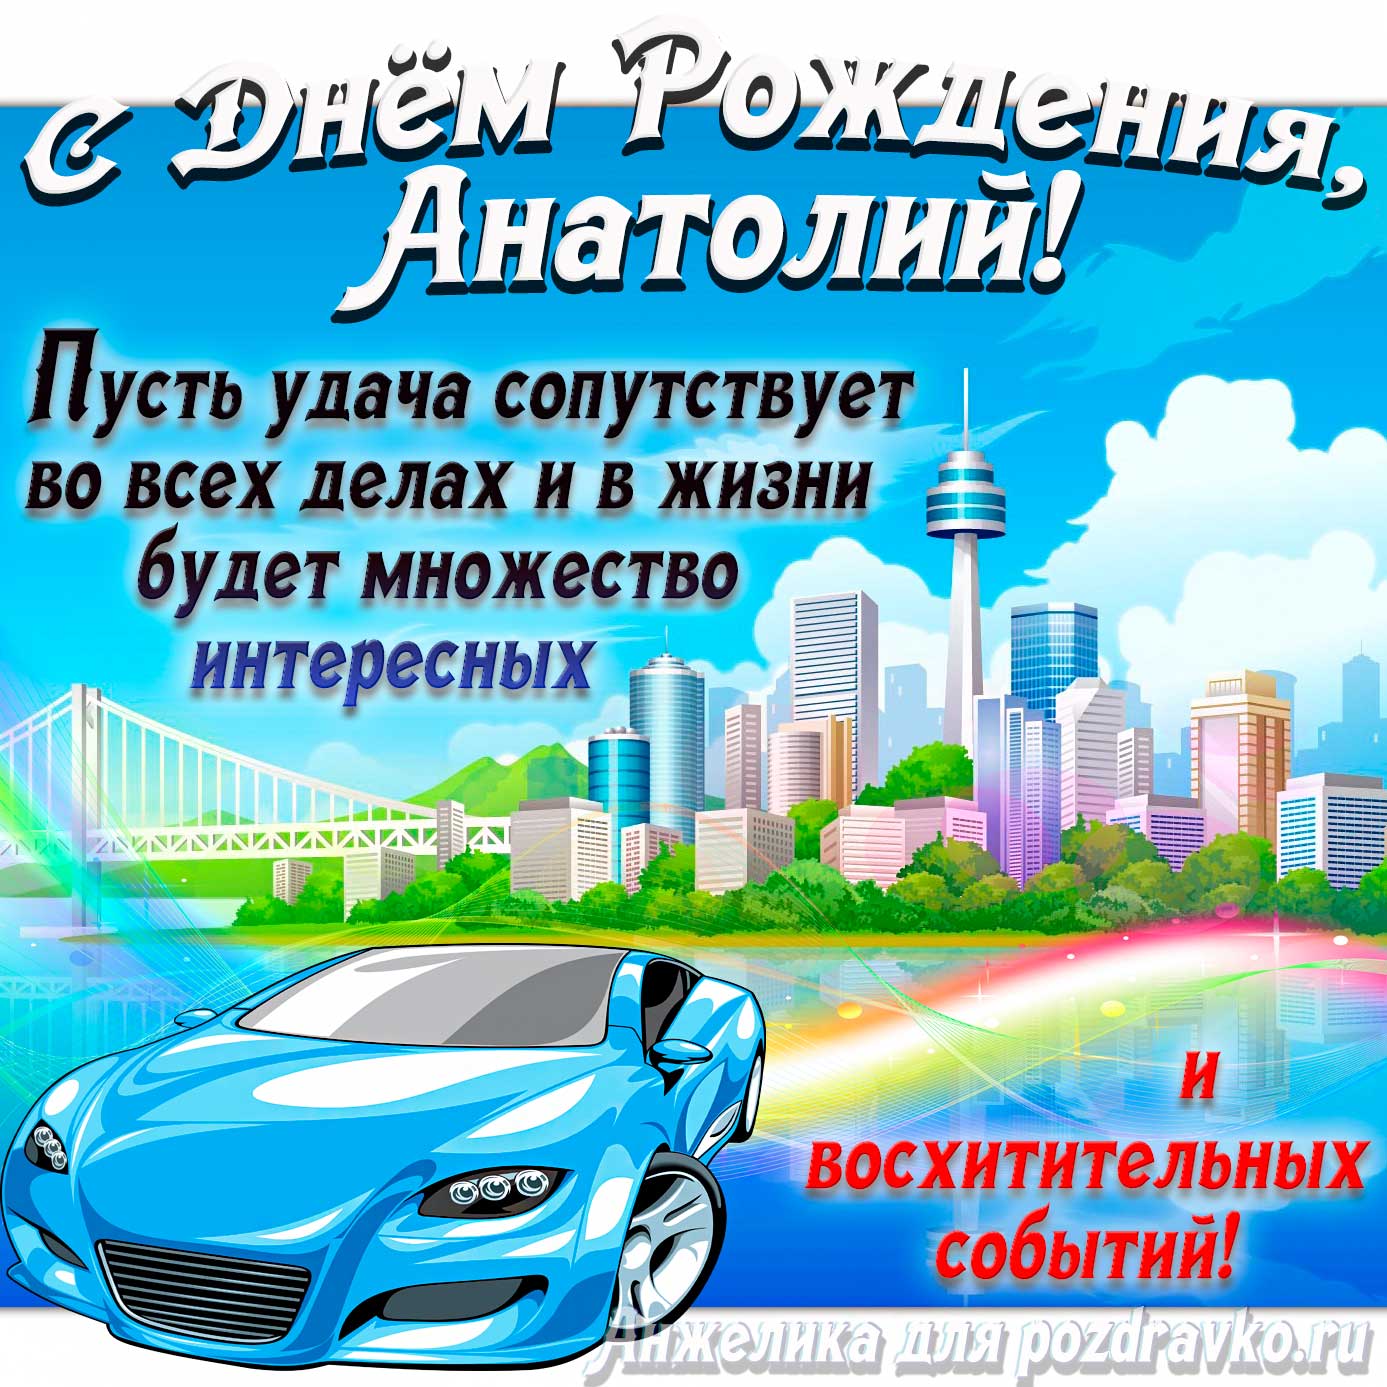 Открытка - с Днём Рождения Анатолий с голубой машиной и пожеланием. Скачать бесплатно или отправить картинку.